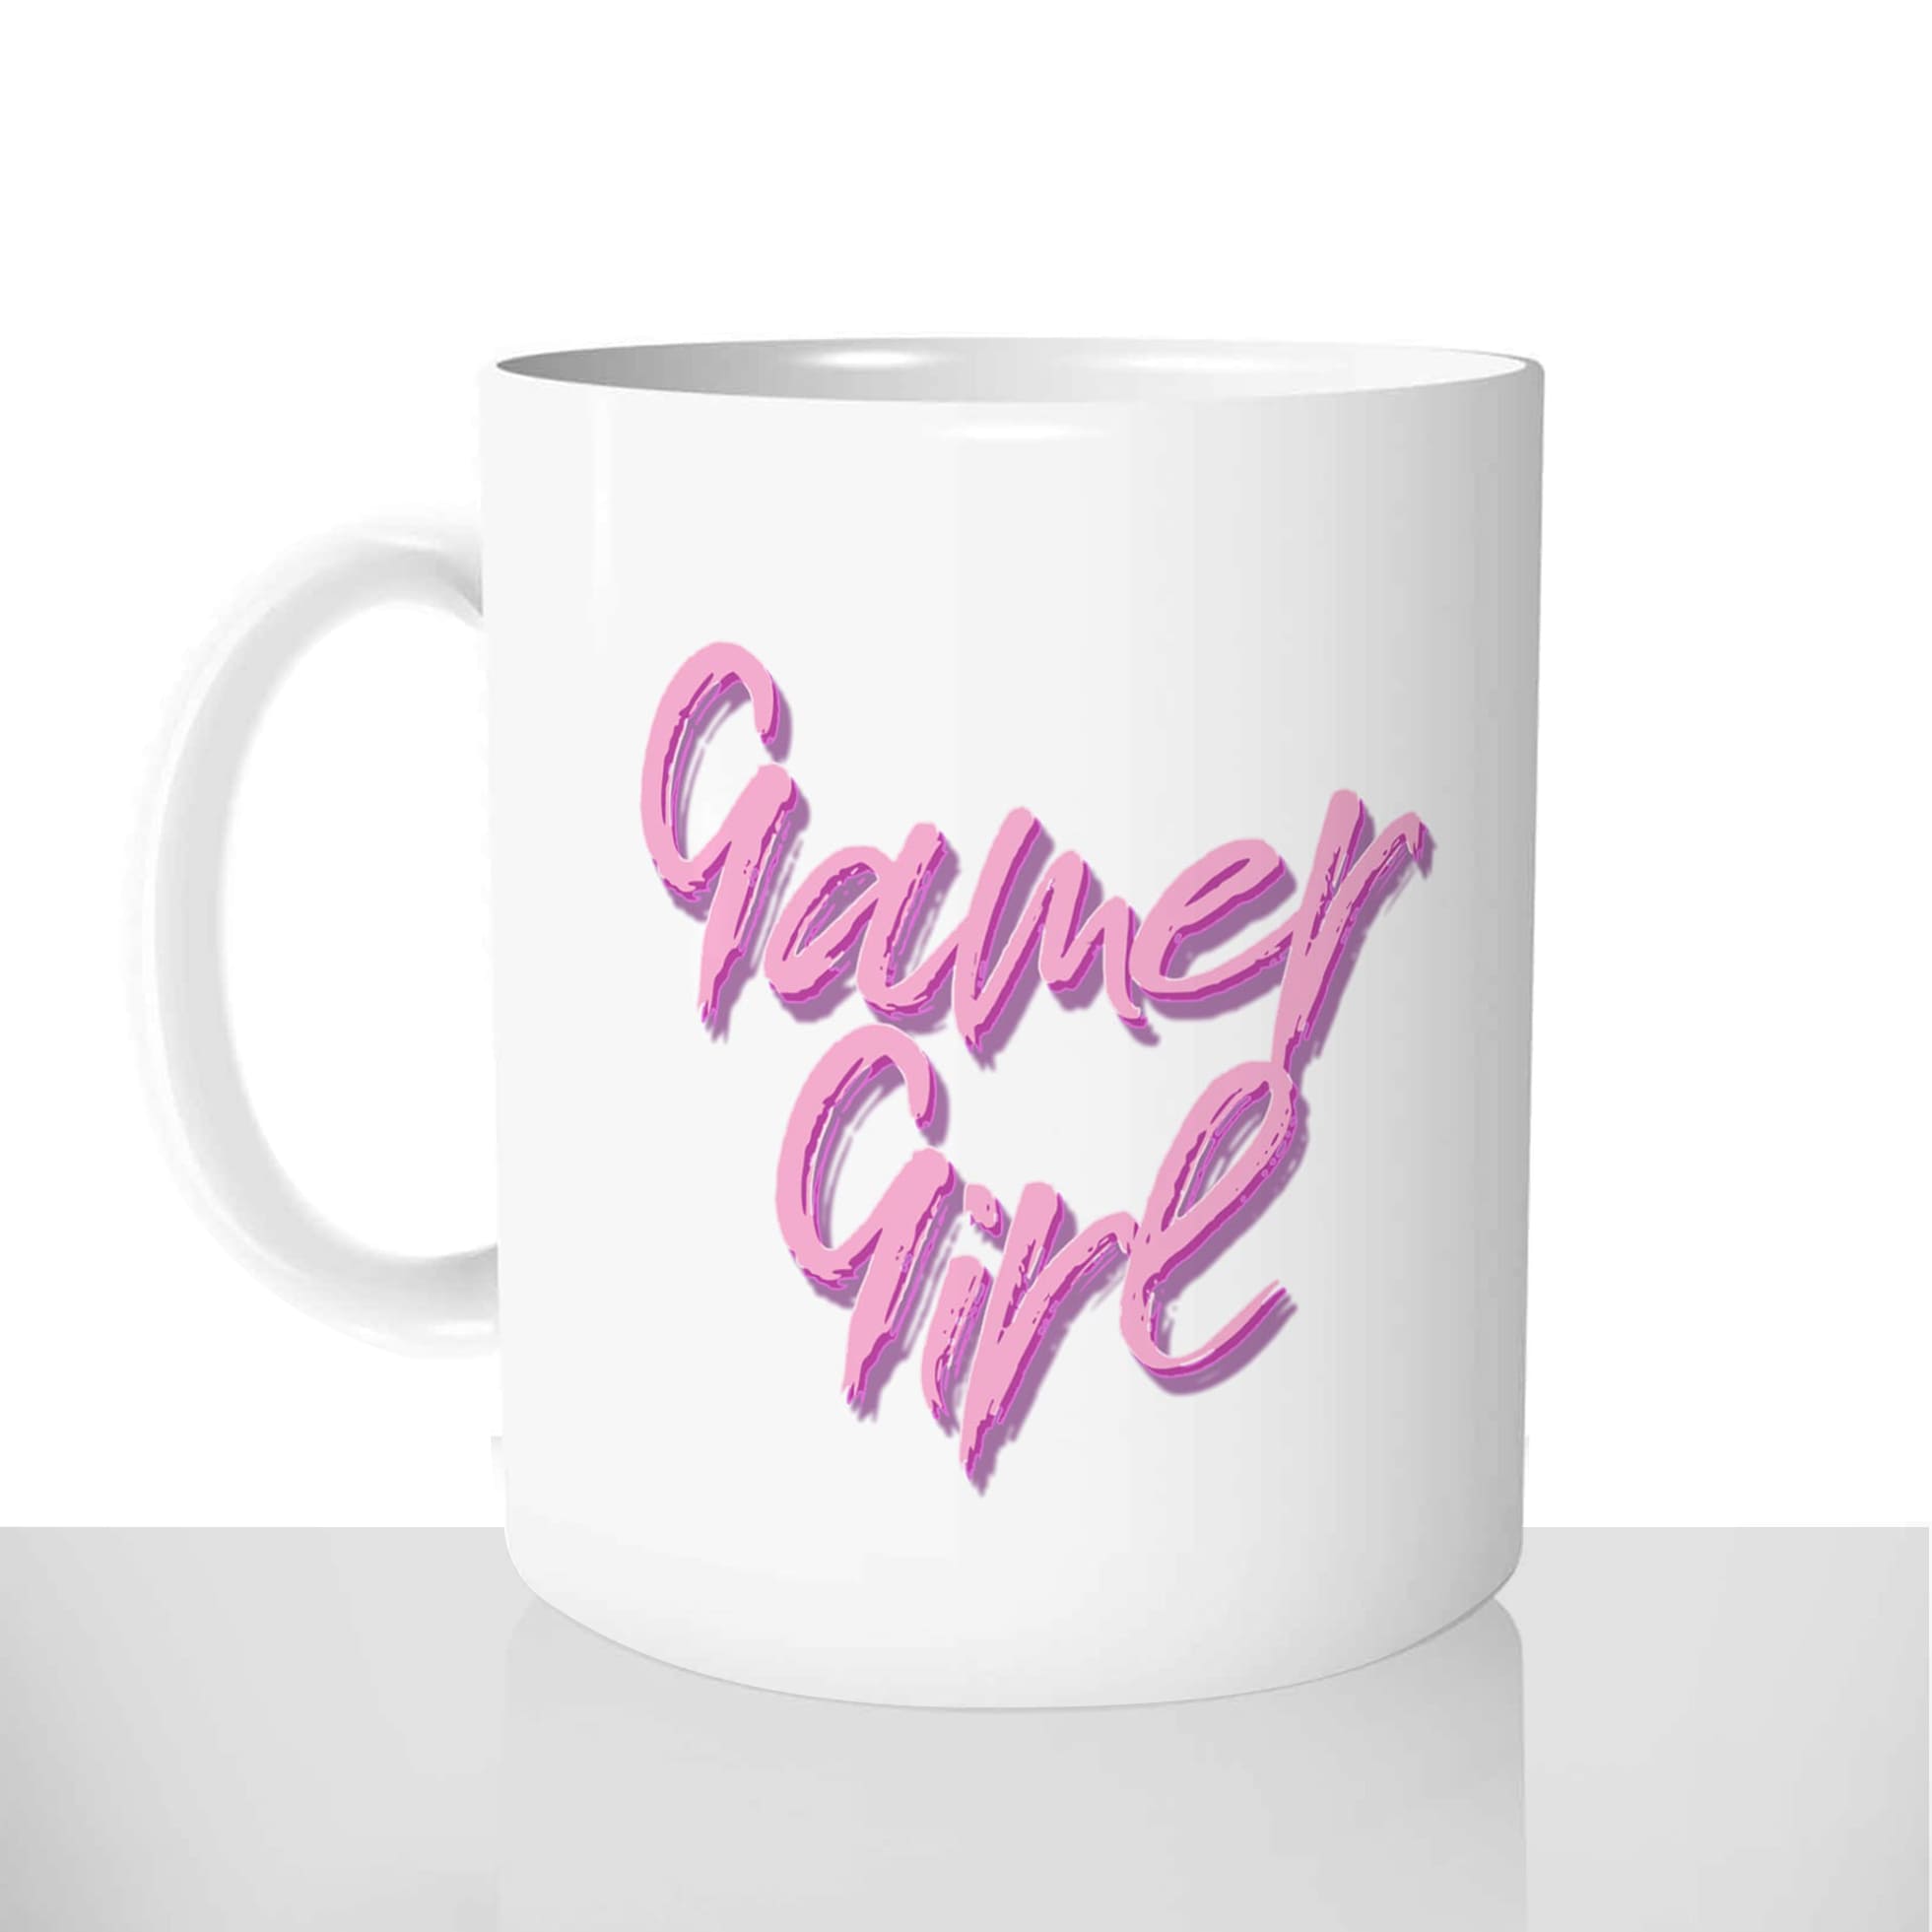 mug classique en céramique 11oz personnalisé personnalisation photo gamer girl gameuse console jeux videos streameuse personnalisable offrir